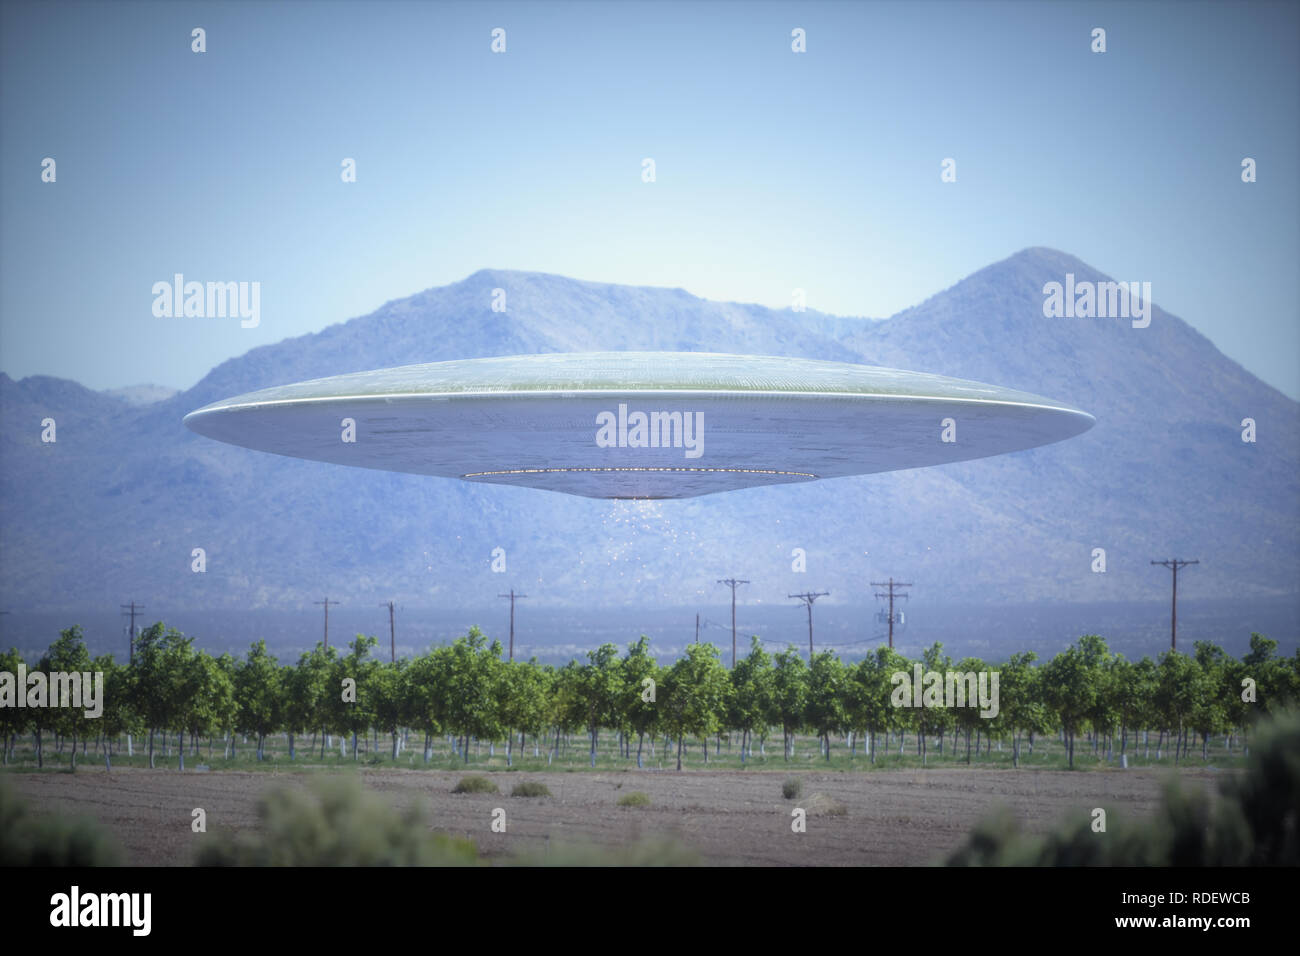 Oggetto Volante non Identificato - UFO, sorvolando piantagioni in luogo deserto con le montagne alle spalle. Foto Stock